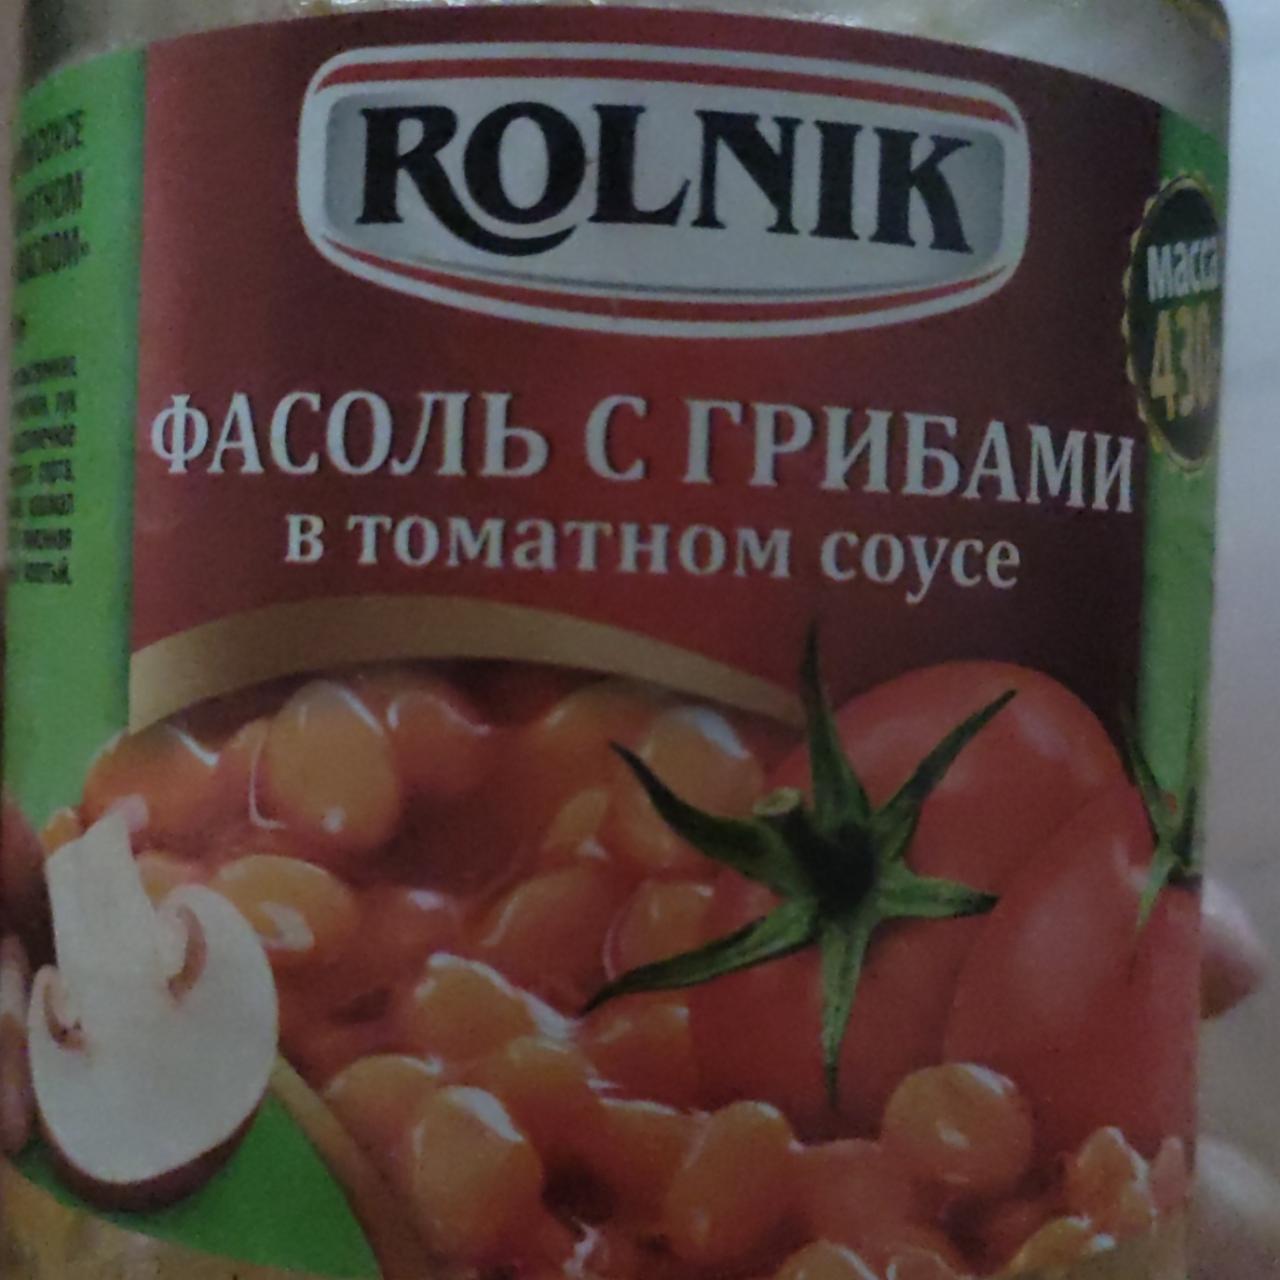 Фото - Фасоль с грибами в томатном соусе Rolnik